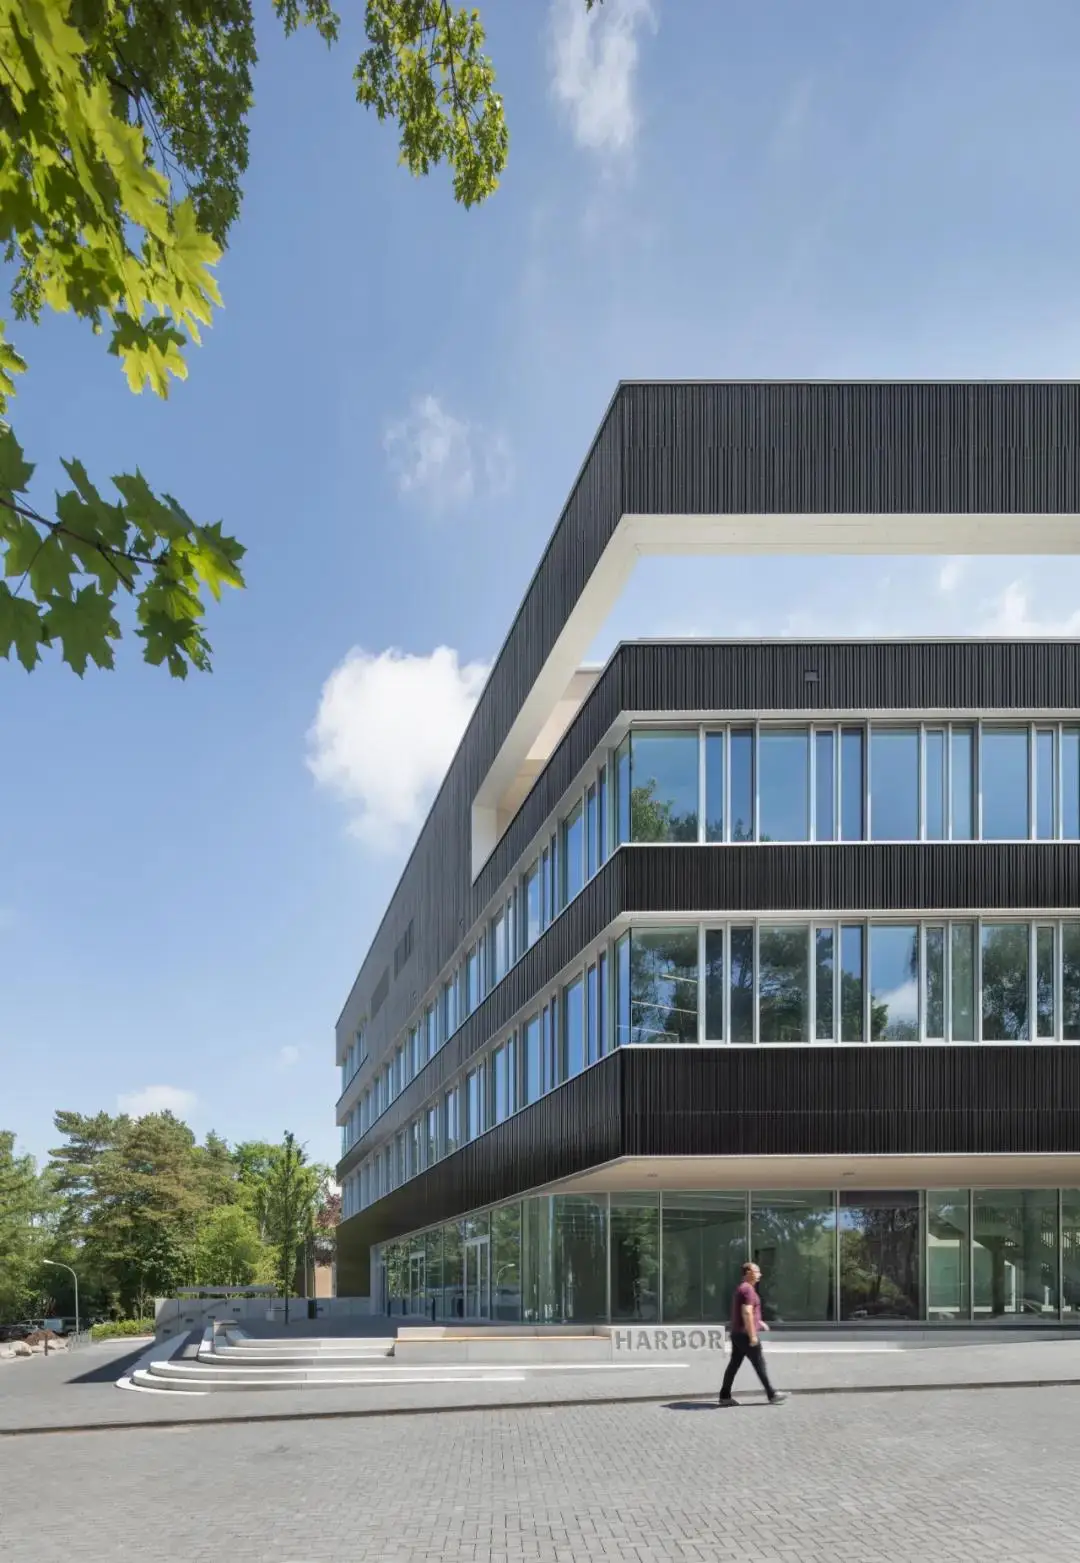 沃德澜祝贺汉堡大学HARBOR实验研究大楼正式投入使用（插图1）沃德澜科技有限公司